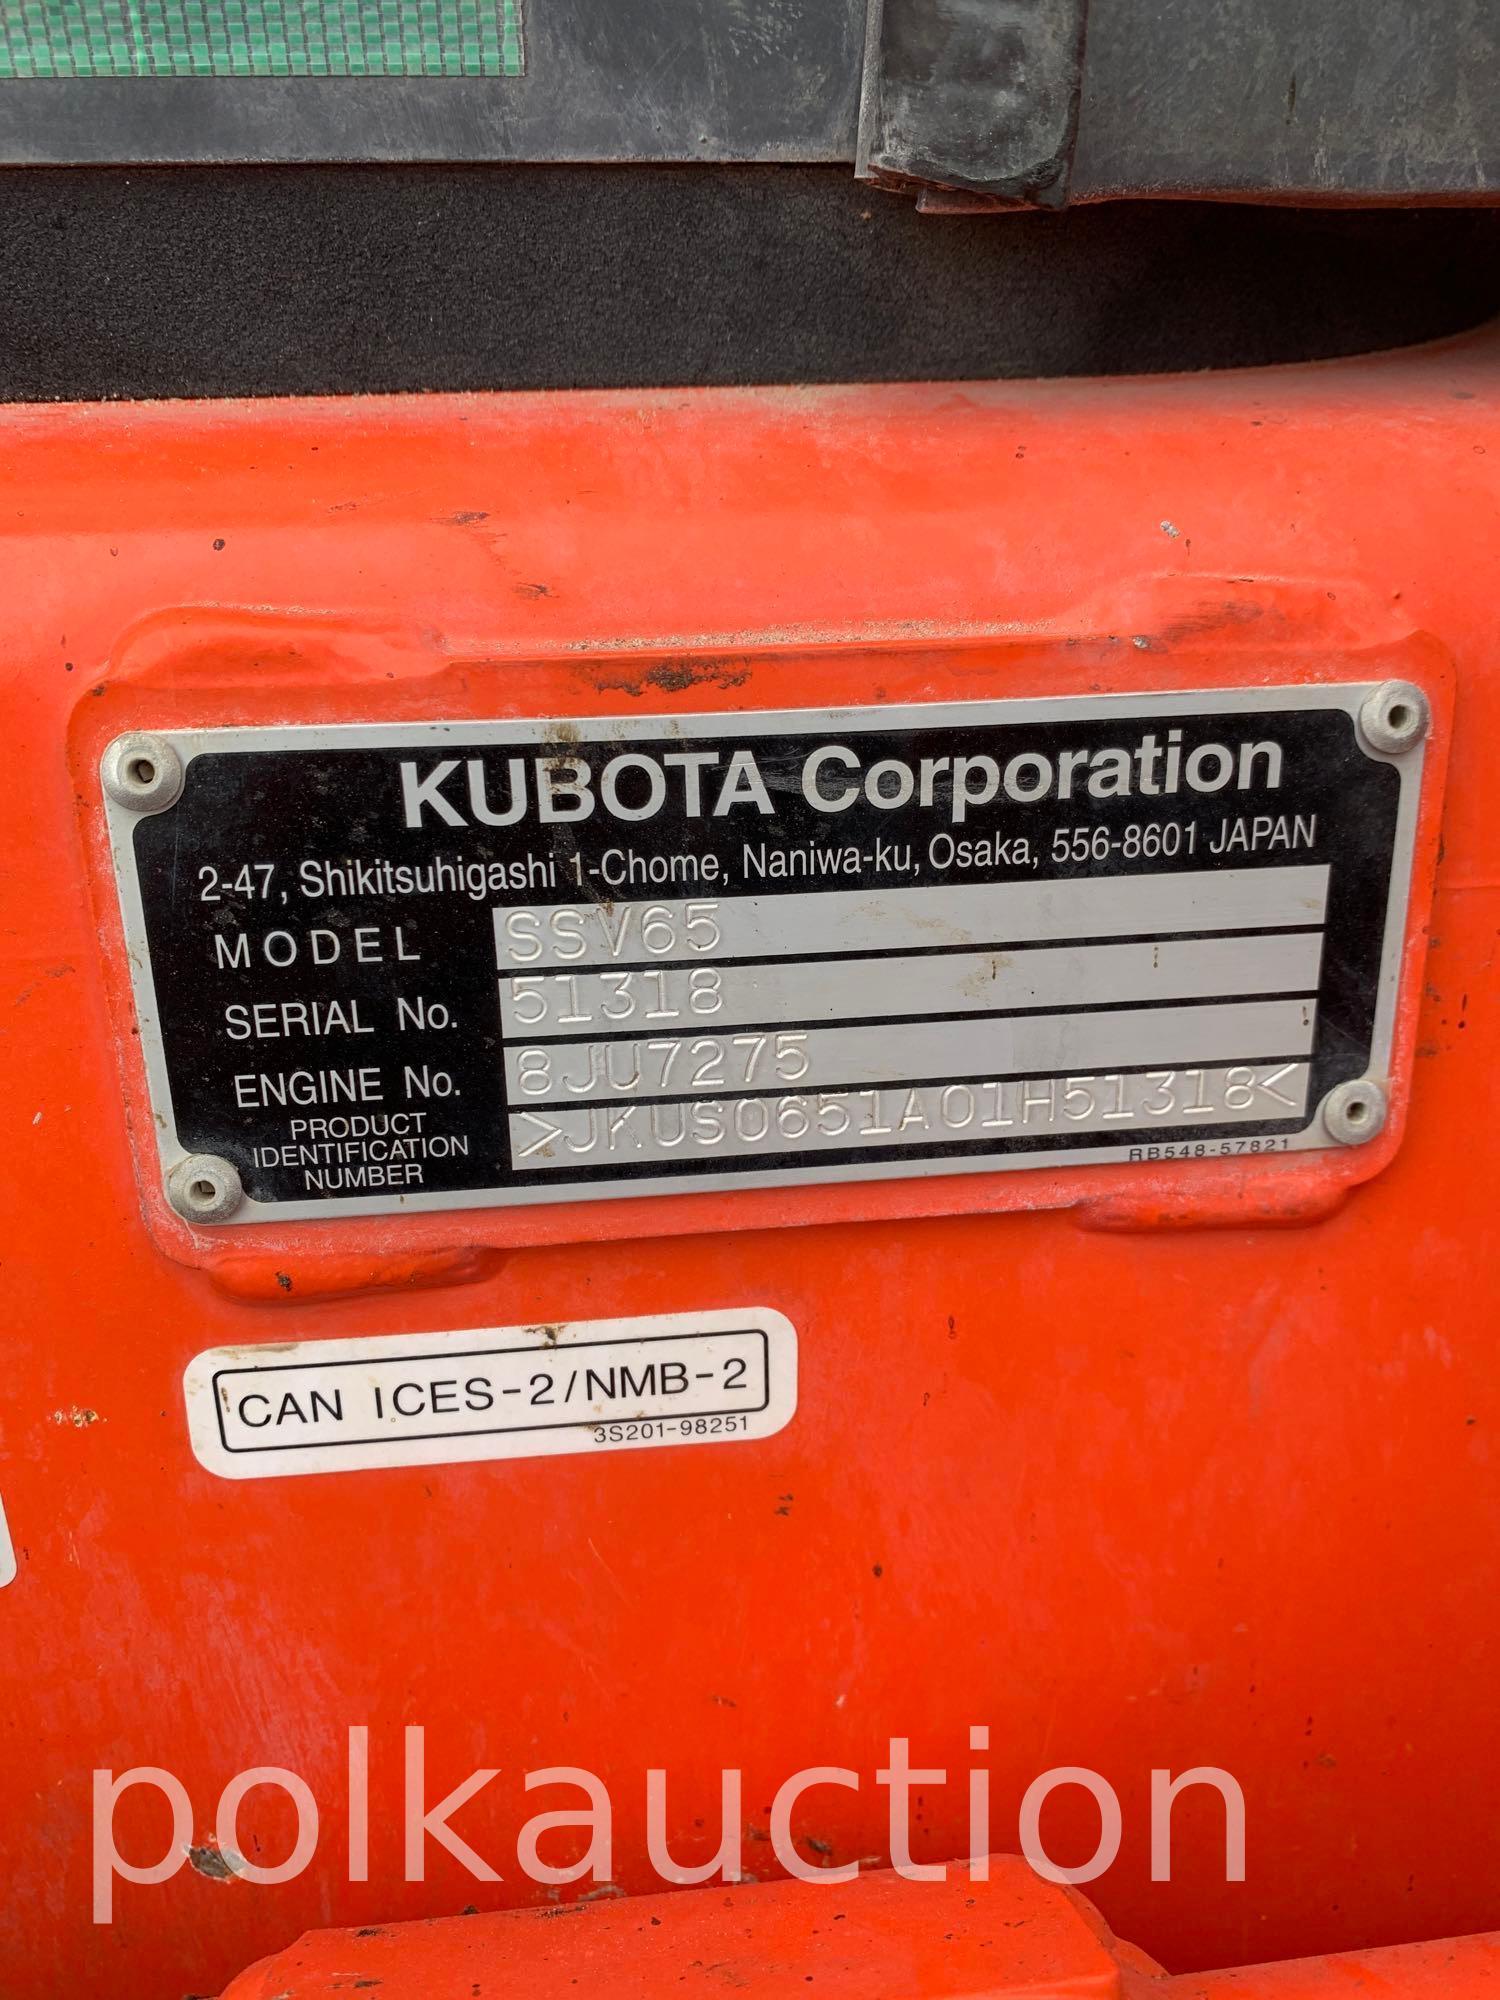 2019 Kubota Skid Steer - SSV 65